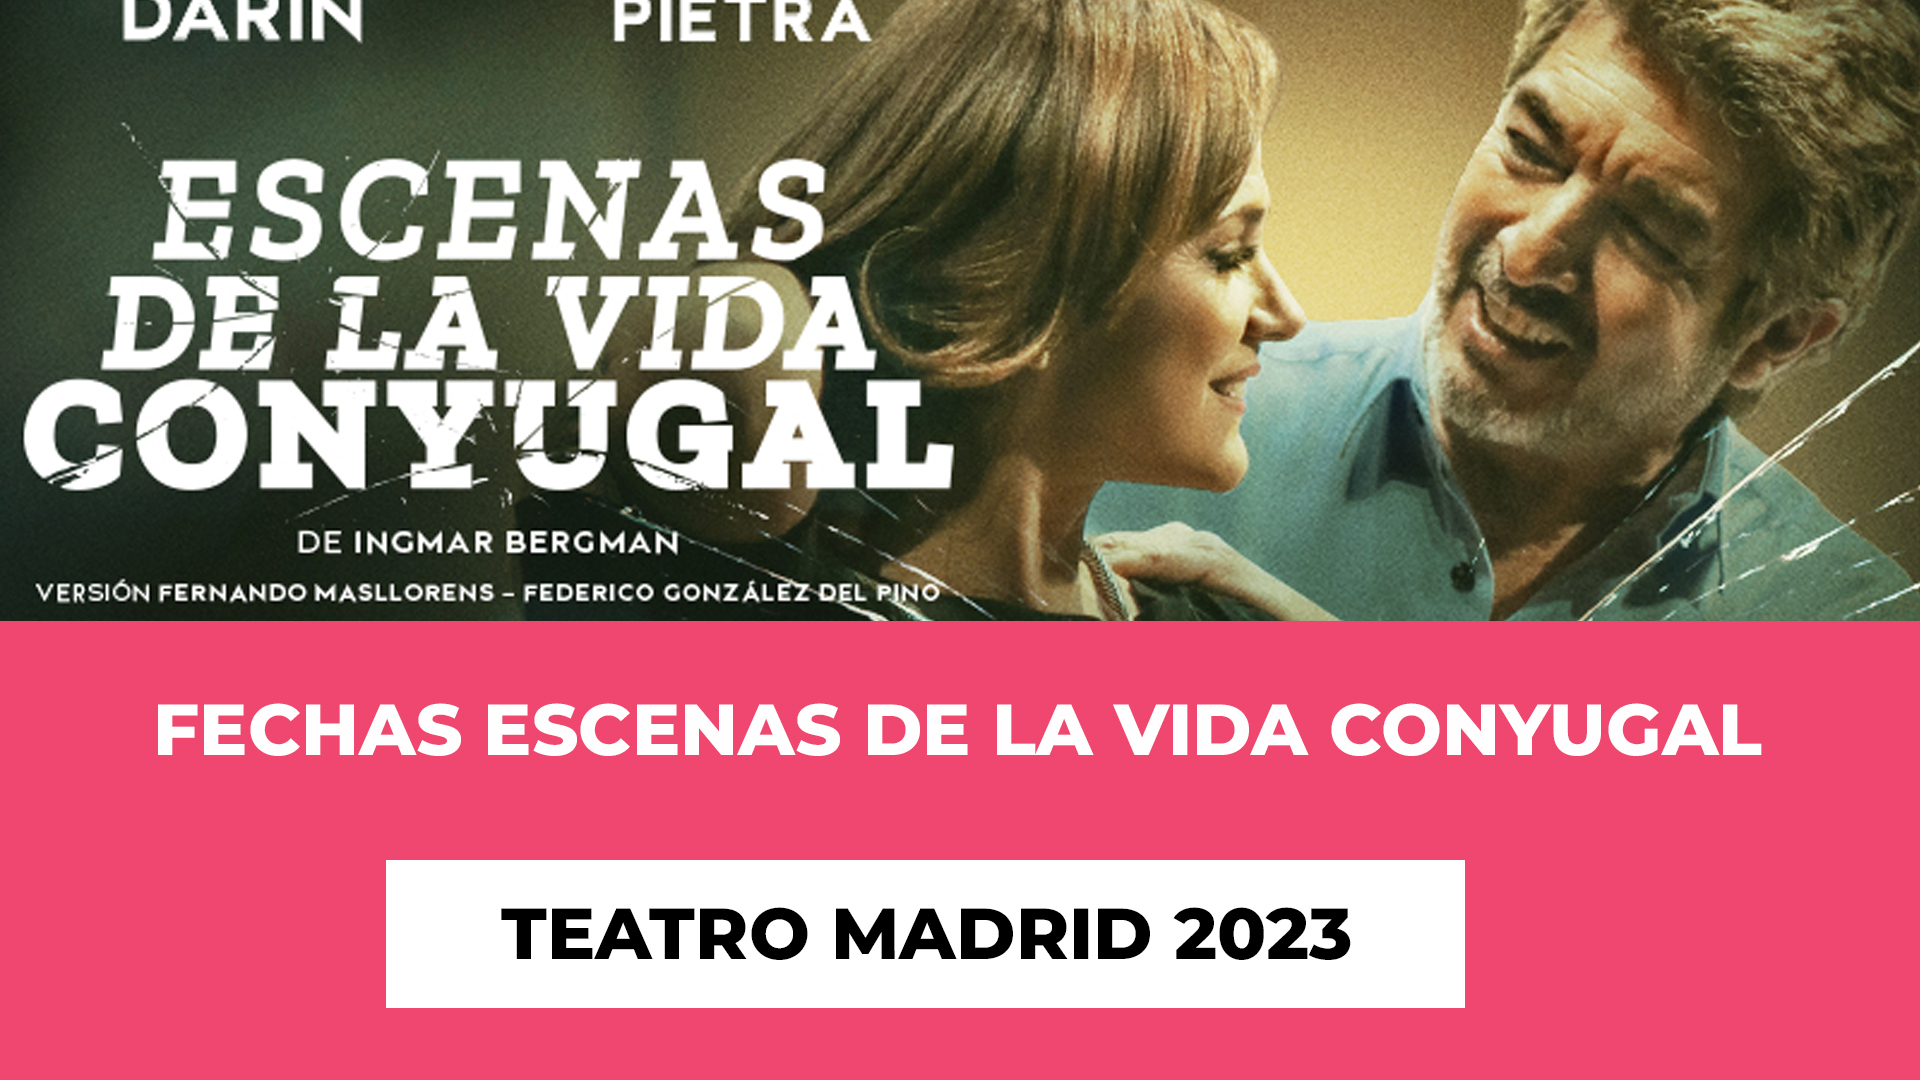 Descubre info de las Fechas Escenas de la vida conyugal Teatro Madrid 2023